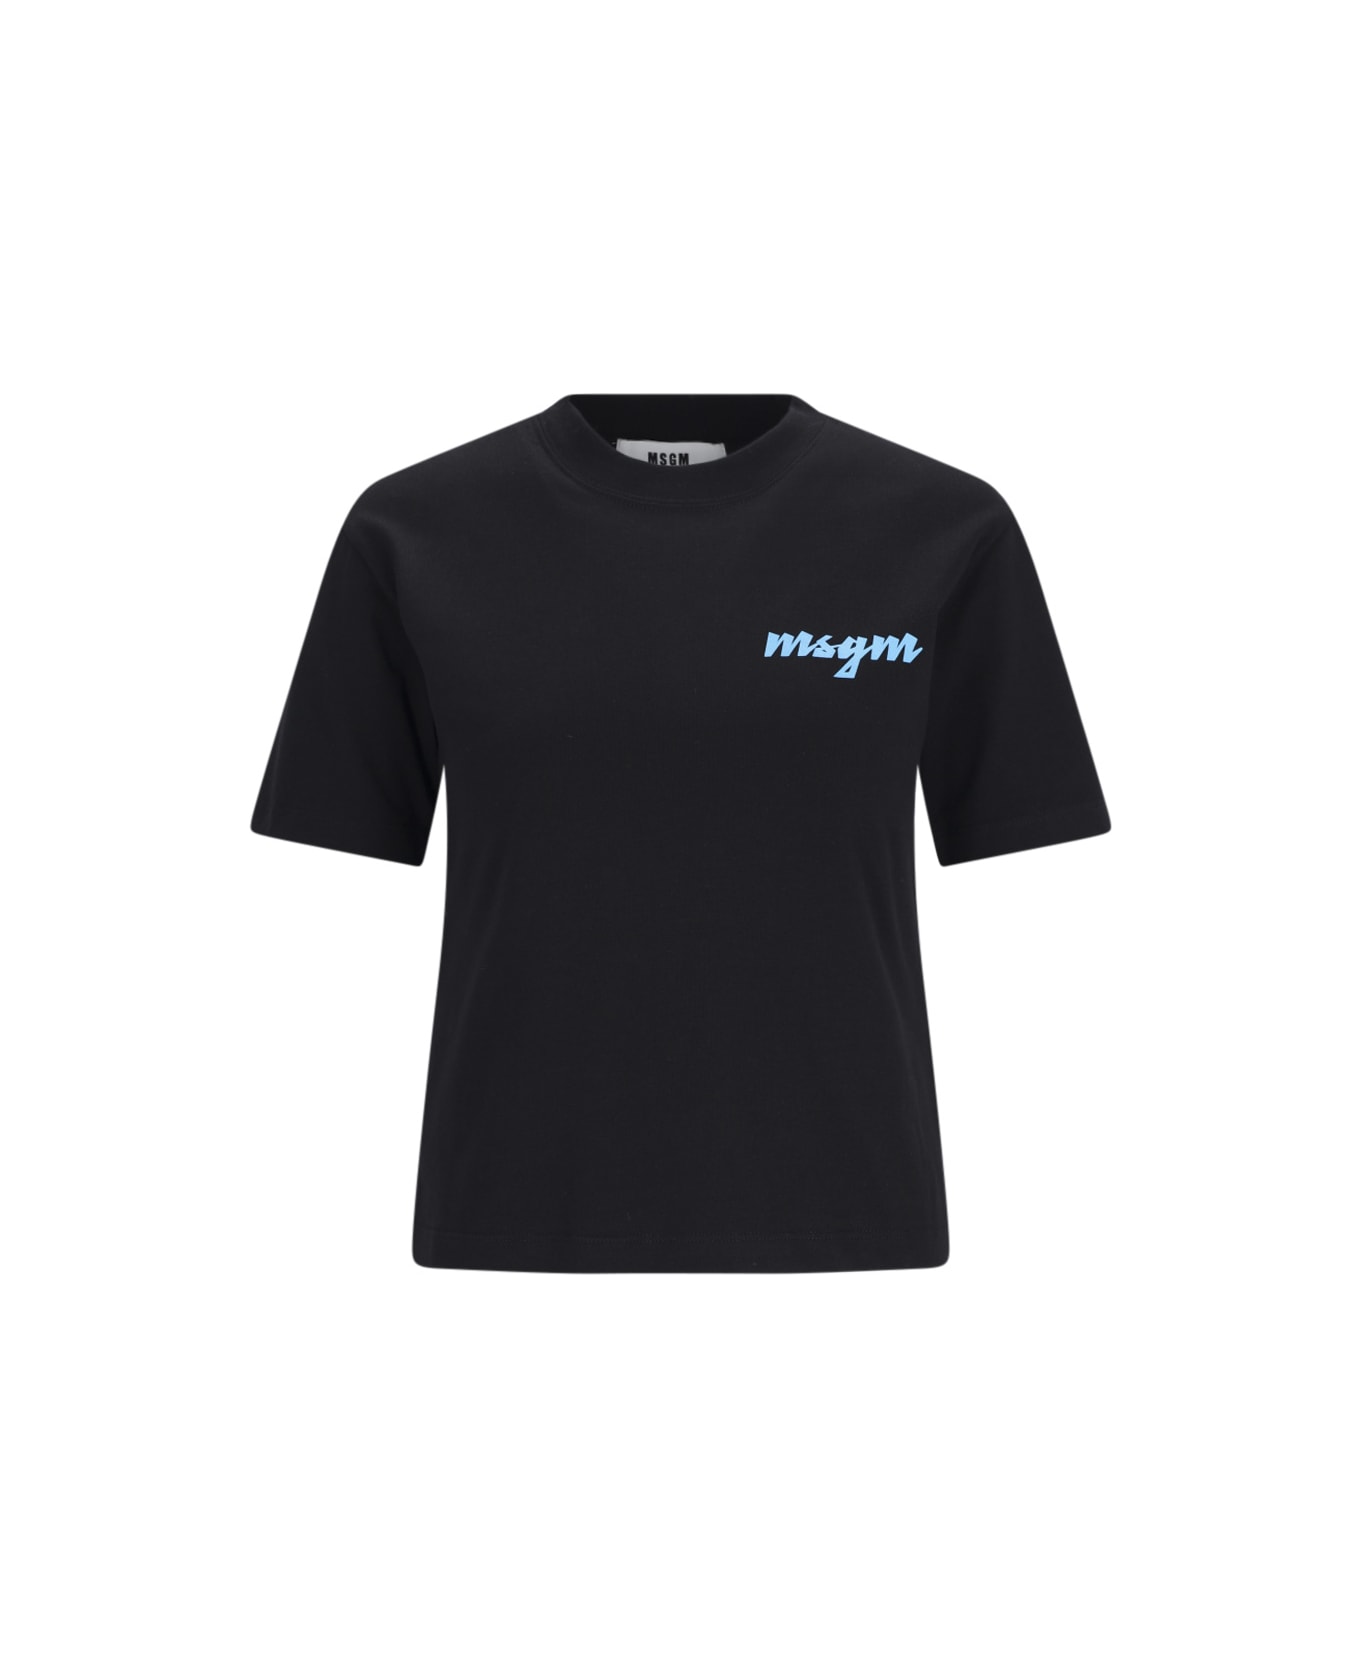 MSGM Logo T-shirt - Black   Tシャツ